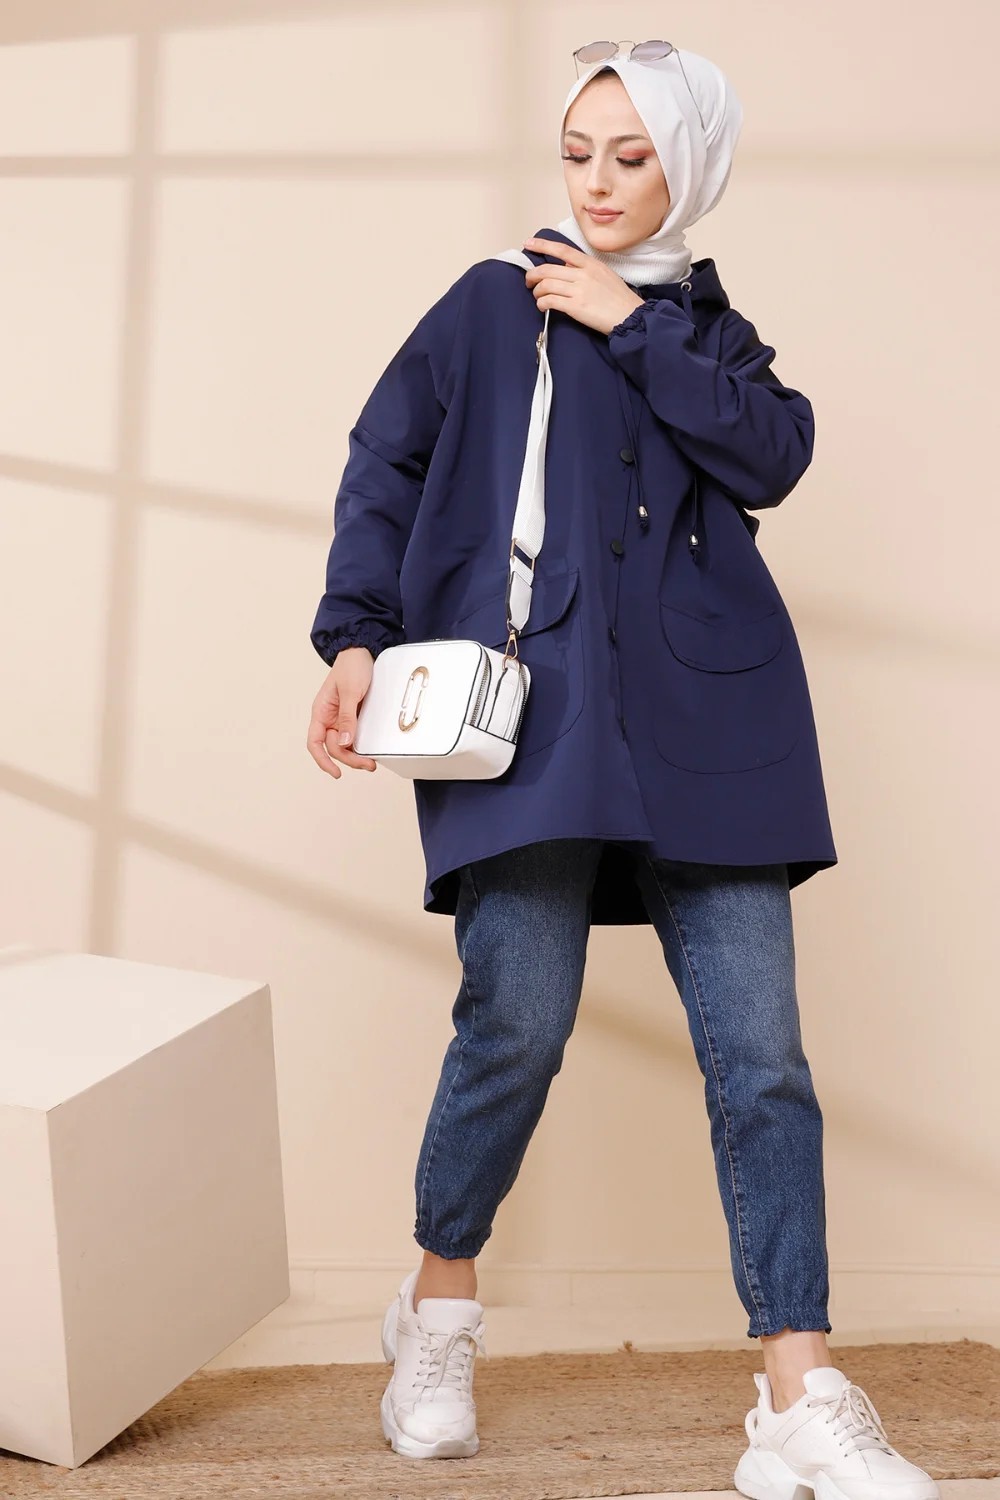 Veste longue style manteau pour femme (Vetement saison automne hiver) -  Couleur bleue